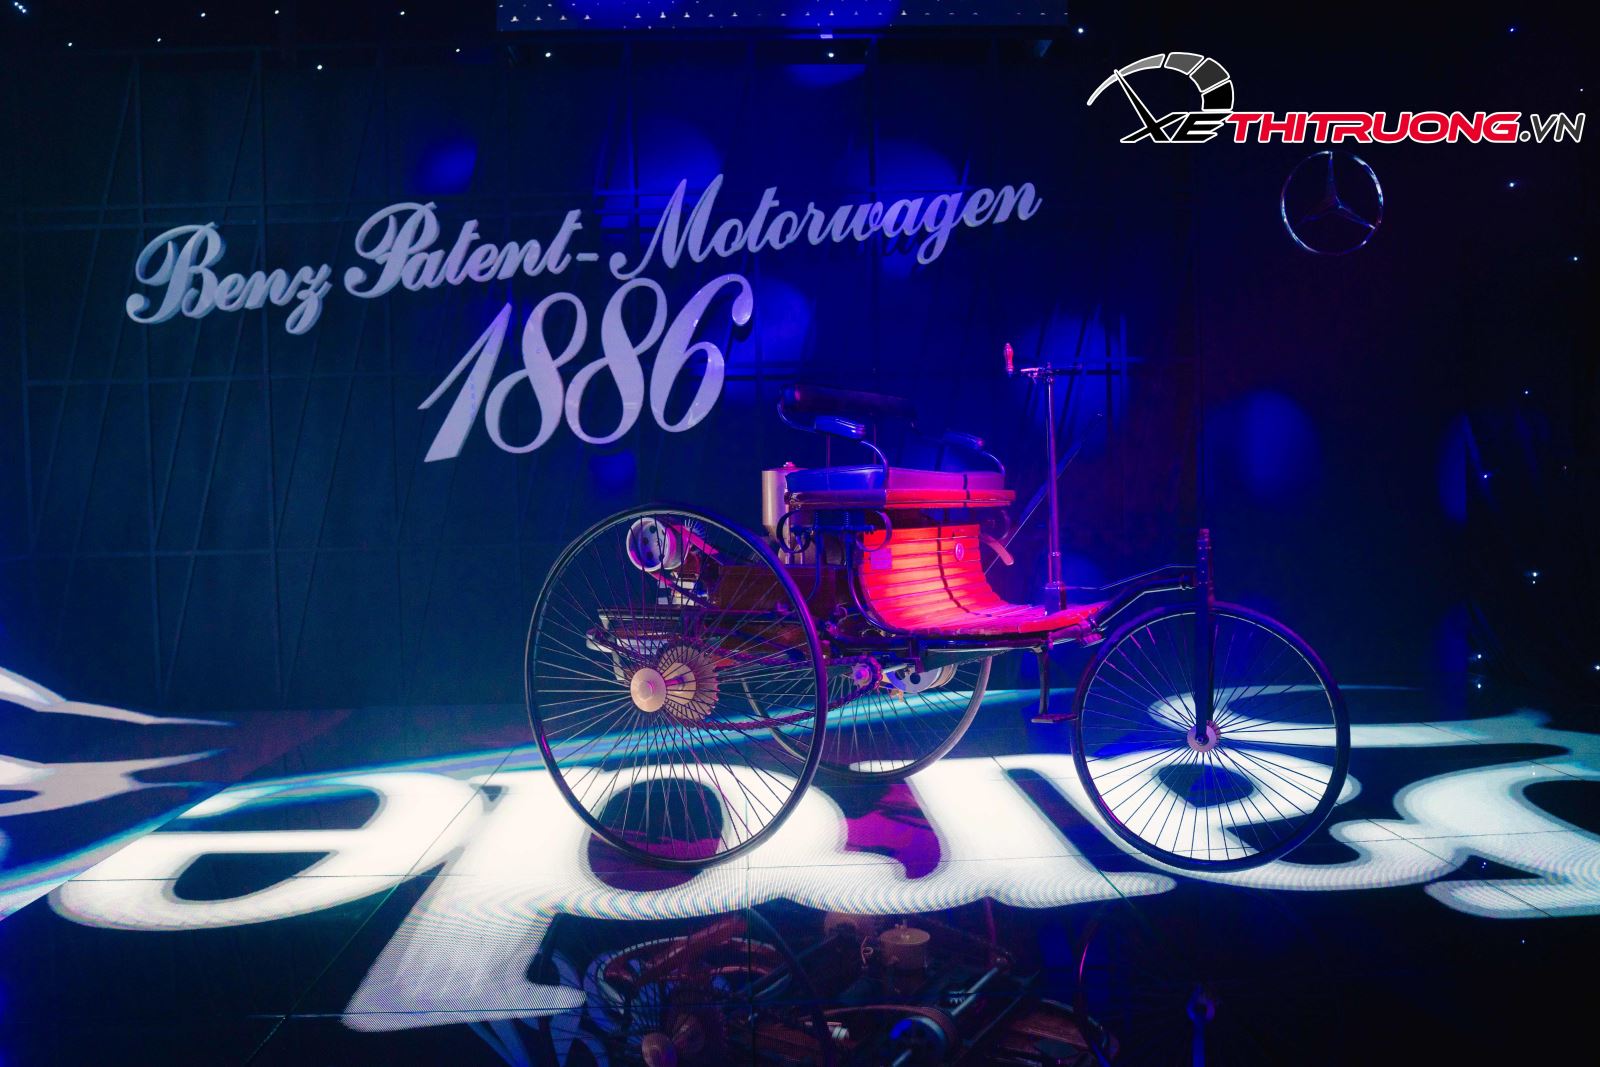 Mô hình xe Benz Patent-Motorwagen - biểu tượng tự hào mang tính di sản của thương hiệu xe Đức cách đây 137 năm. Ảnh: Võ Thành Tâm